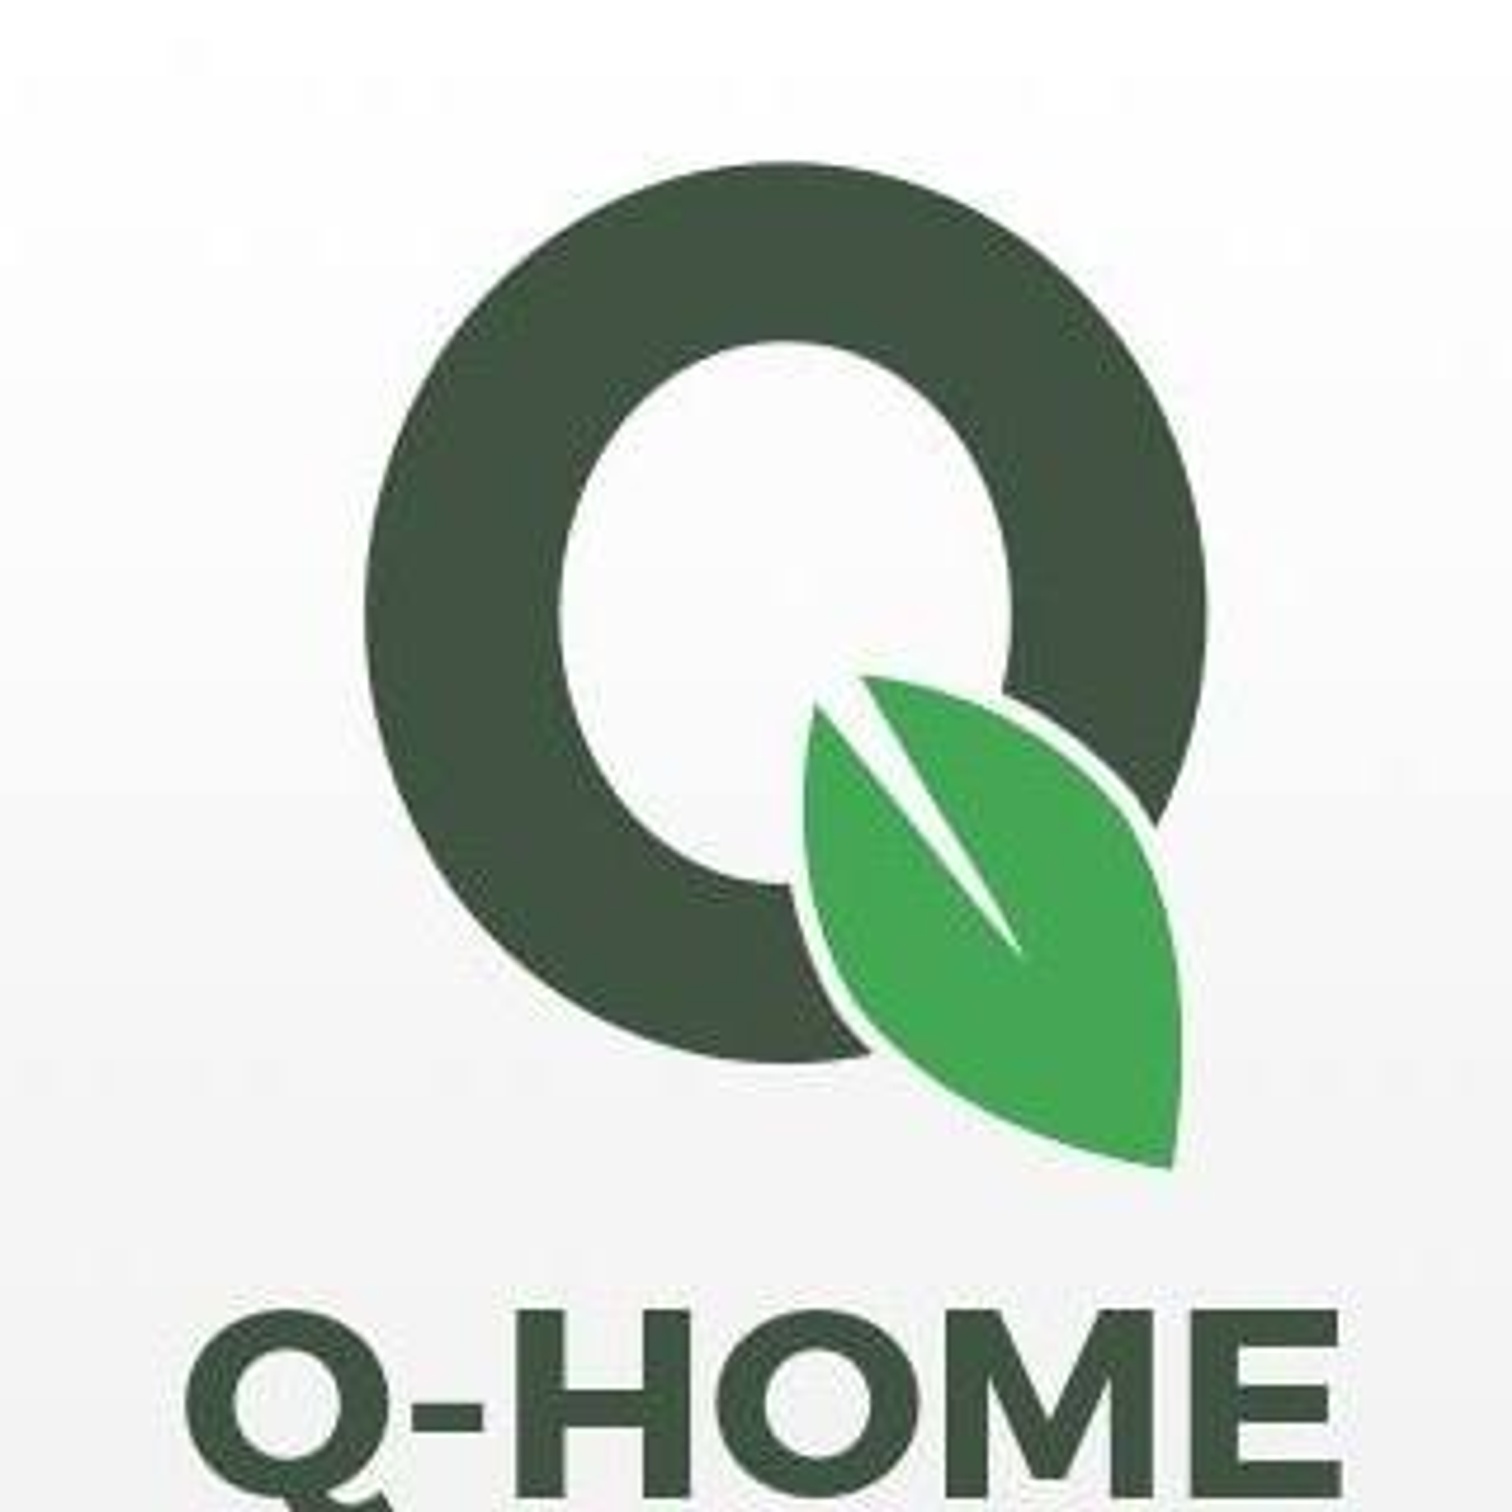 Q-Home logo